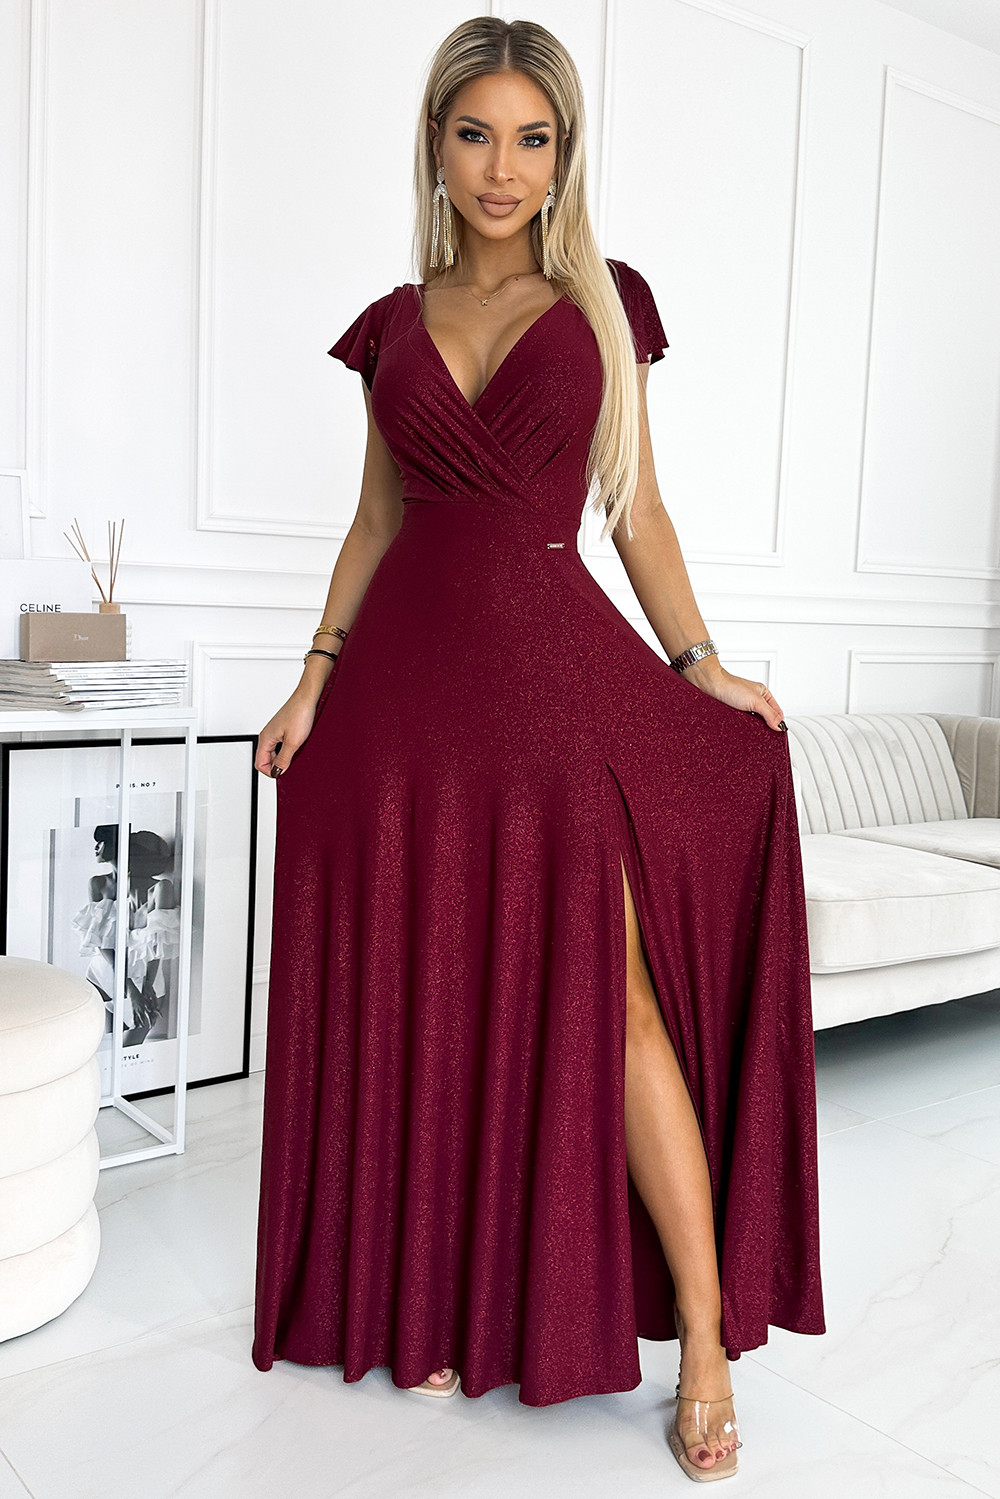 CRYSTAL - Dlouhé lesklé dámské šaty ve vínové bordó barvě s výstřihem 411-8 S